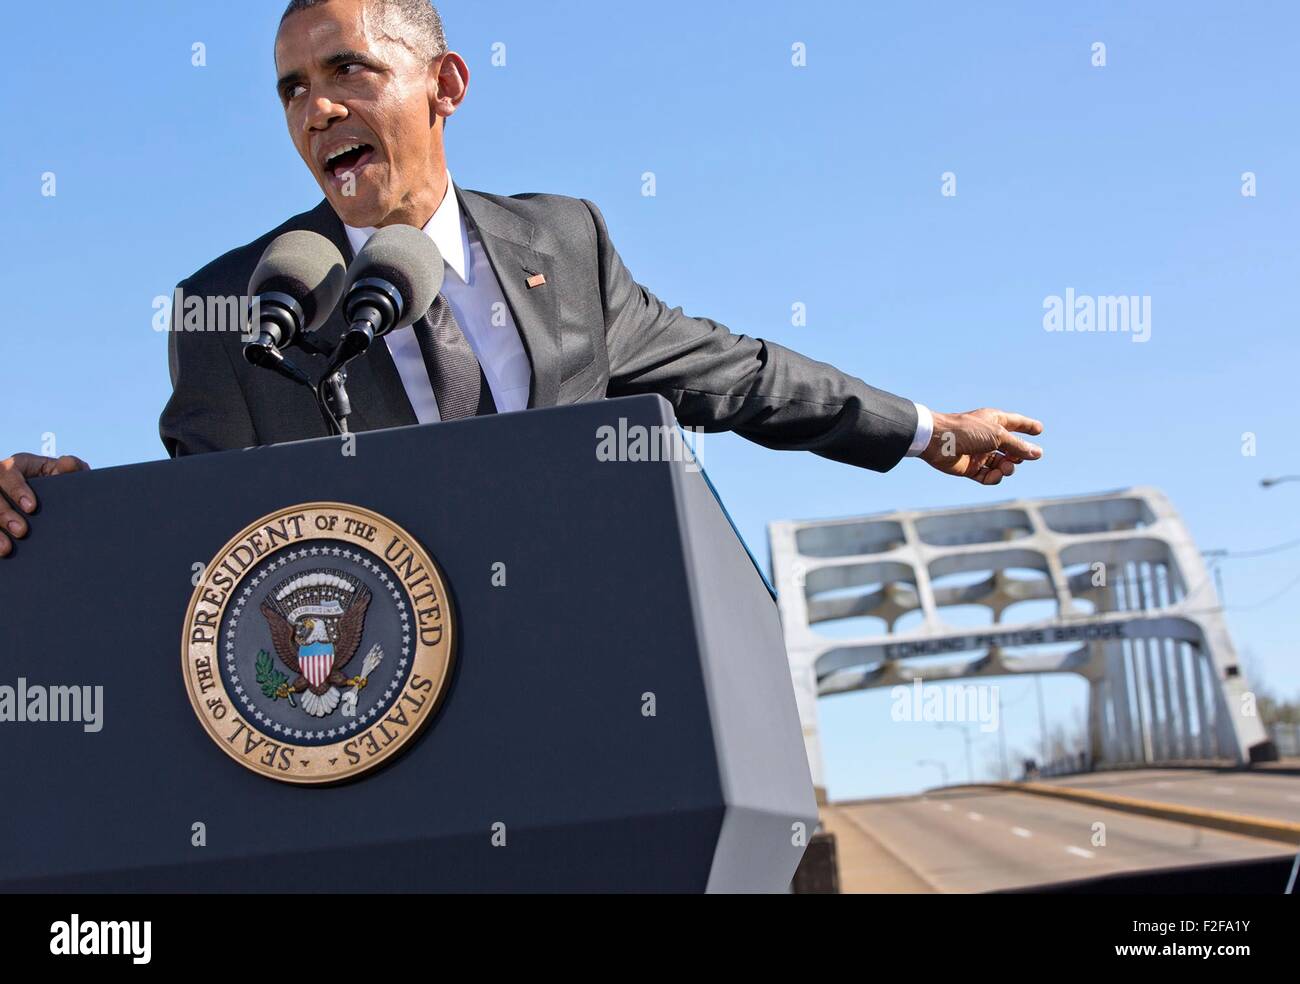 El presidente estadounidense Barack Obama hacia el puente Edmund Pettus durante su discurso con motivo del 50° aniversario de los derechos civiles de Selma a Montgomery marchas de Marzo 7, 2015 en Selma, Alabama. Foto de stock